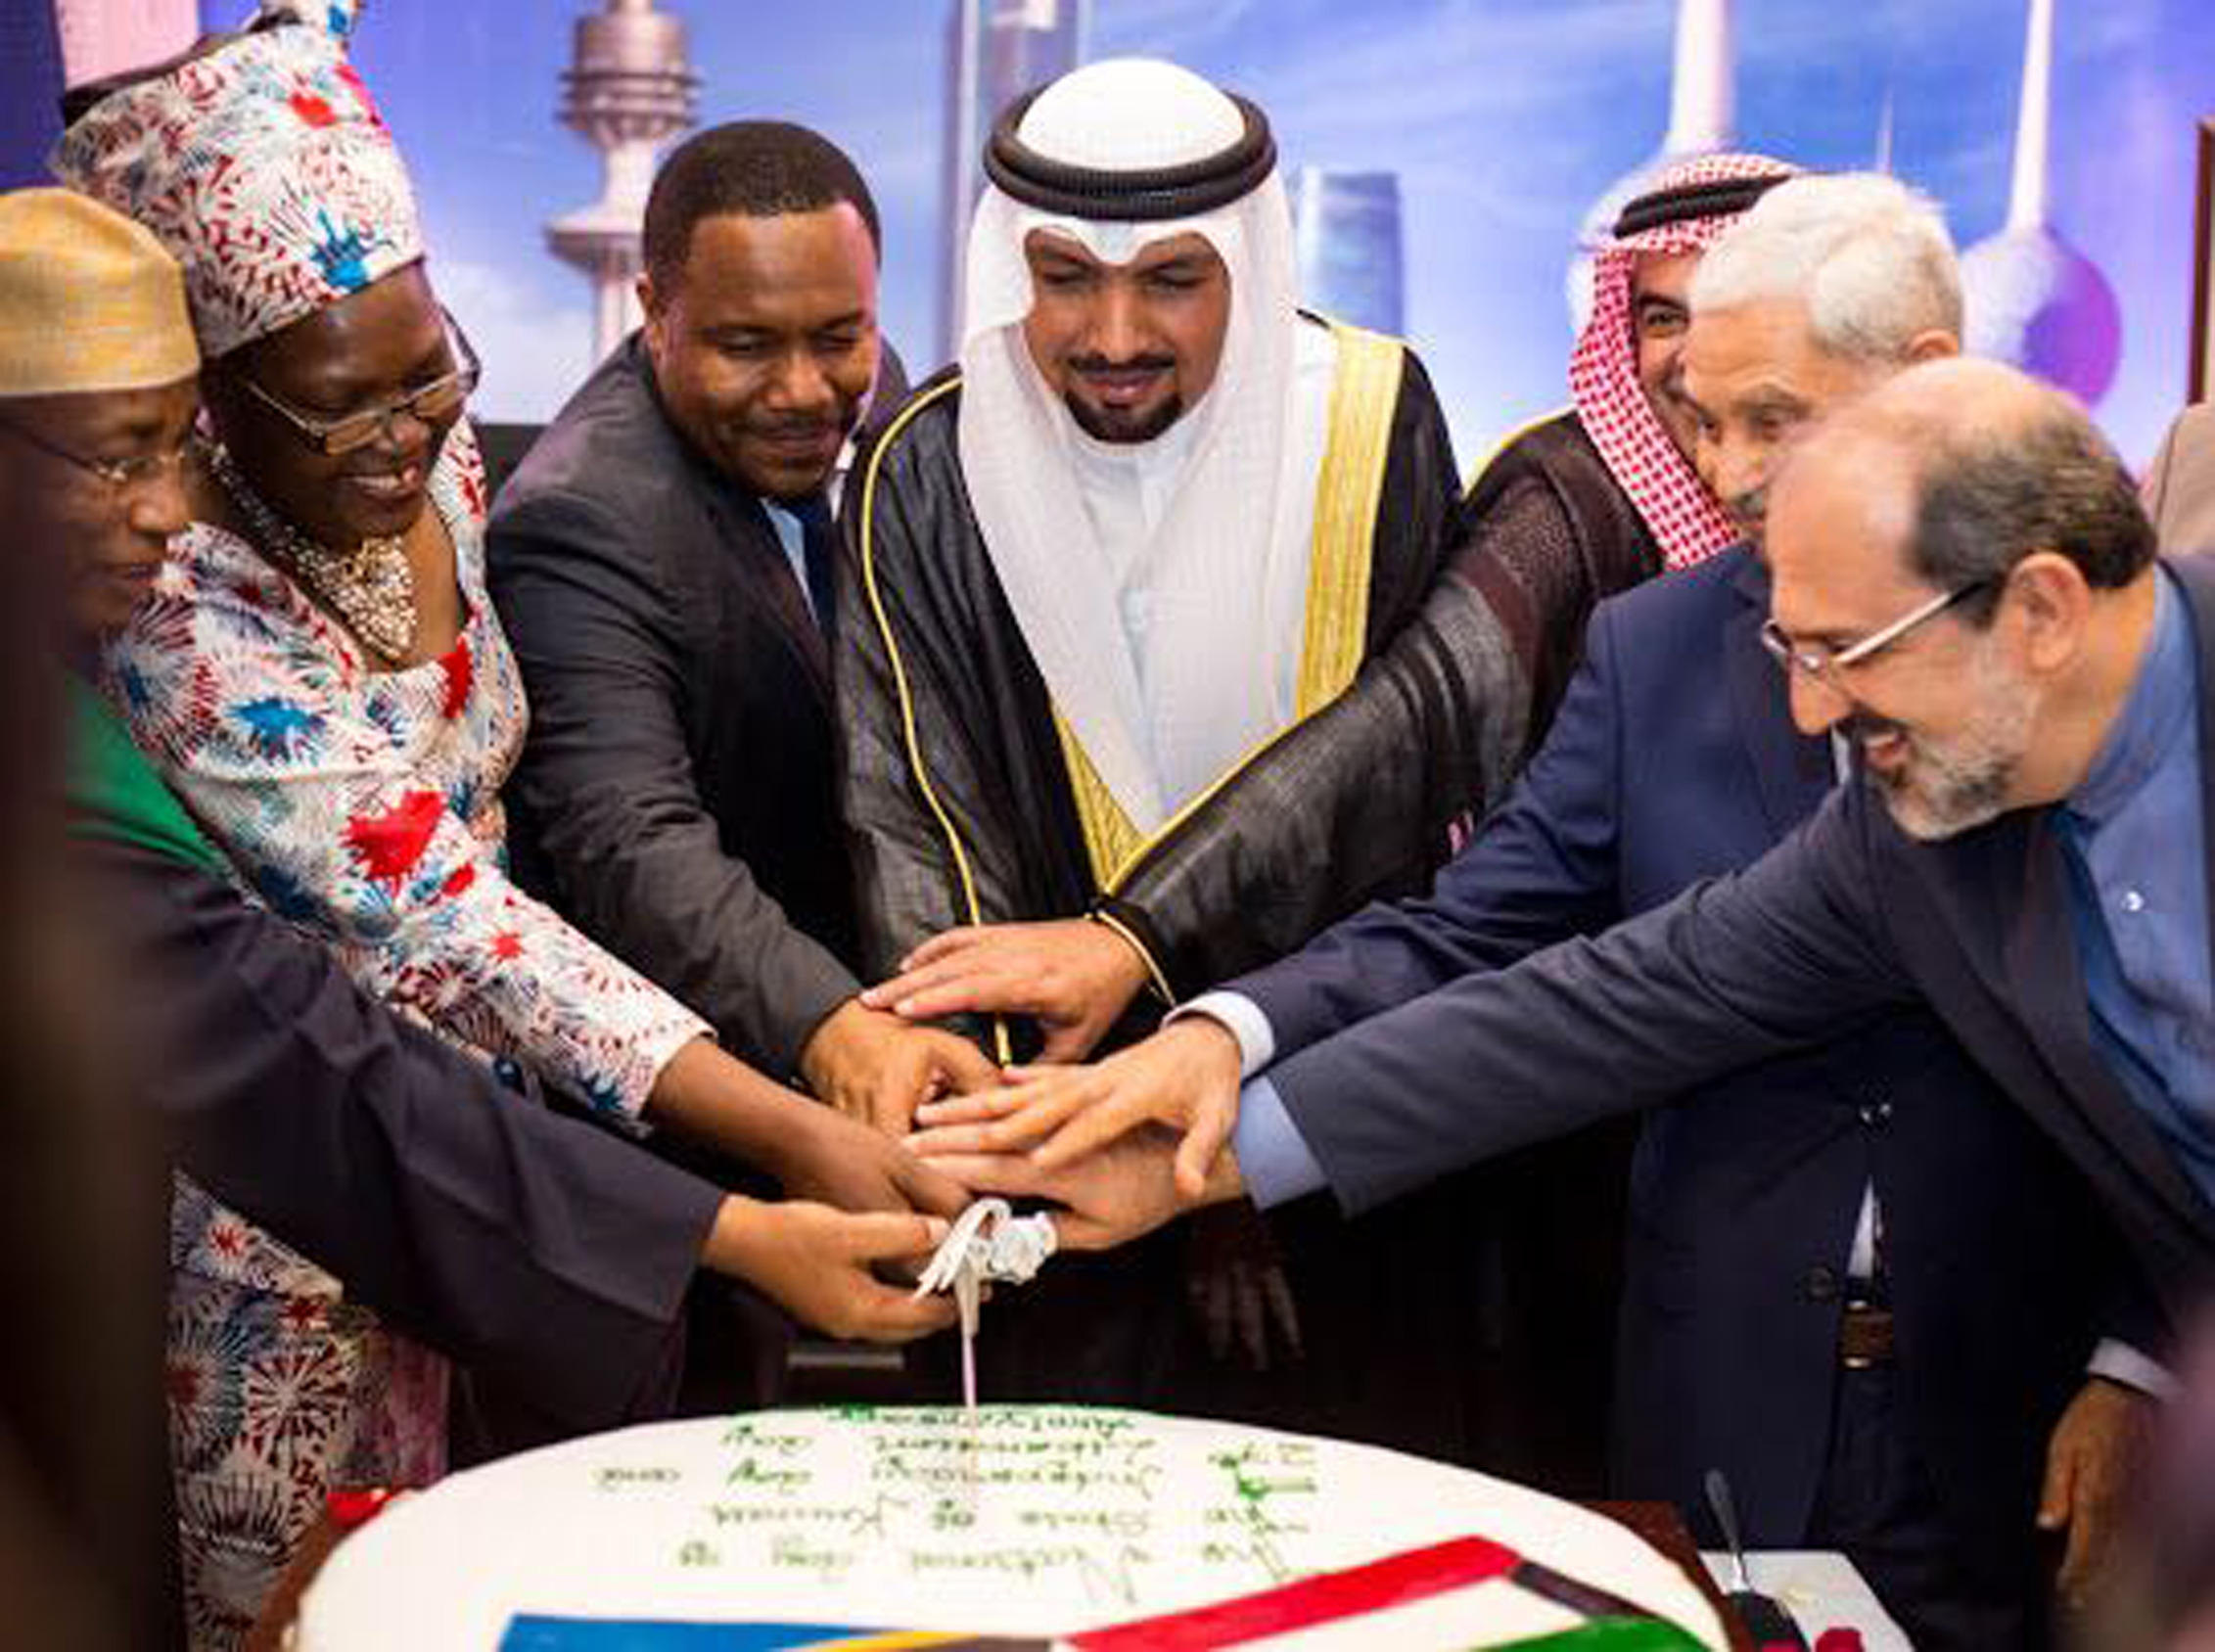 سفير دولة الكويت لدى تنزانيا جاسم الناجم يقطع كعكة الحفل